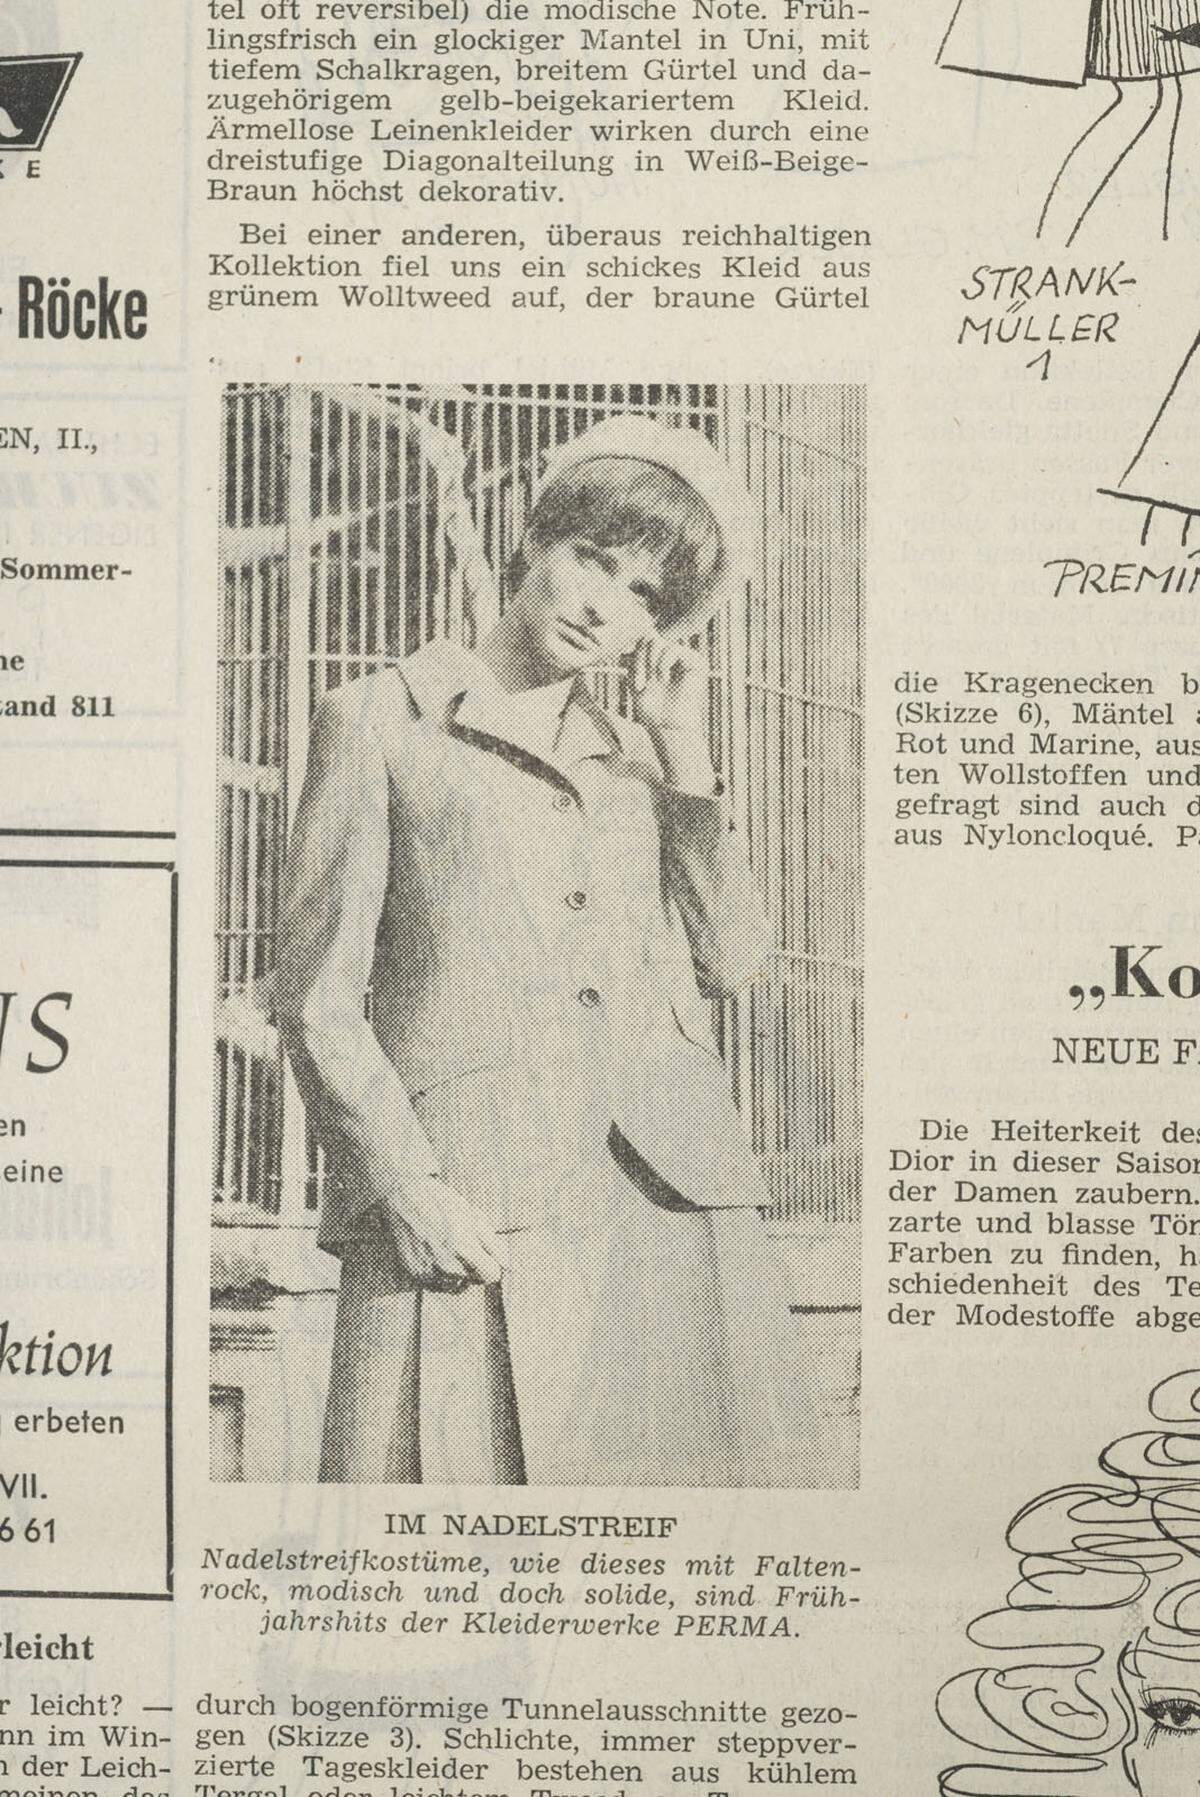 Ein Ausblick auf den Frühling 1969: "Nadelstreifenkostüme, wie dieses mit Faltenrock, modisch und doch solide, sind Frühjahrshits der Kleiderwerke PERMA."